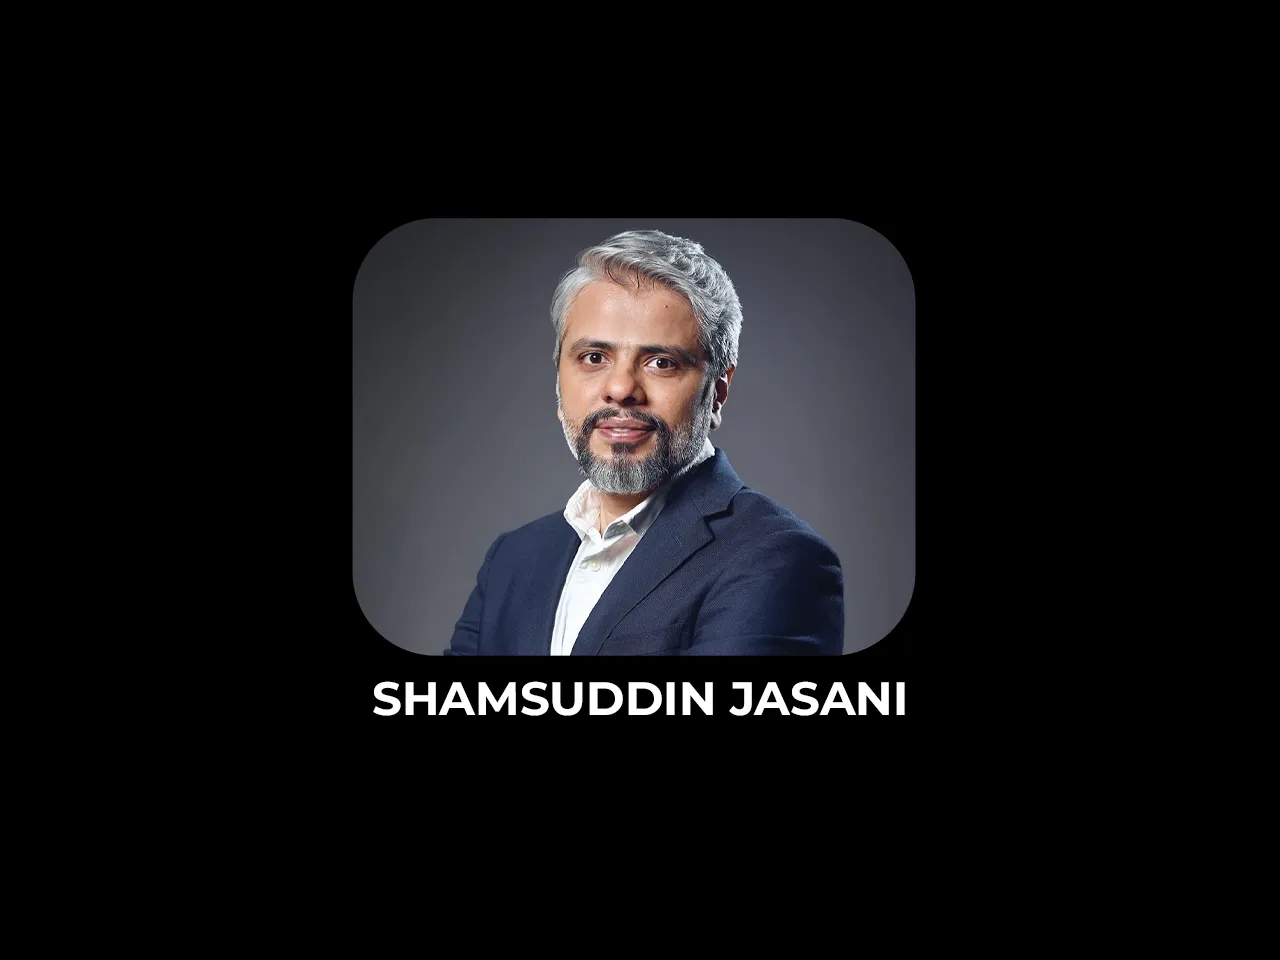 Shamsuddin Jasani